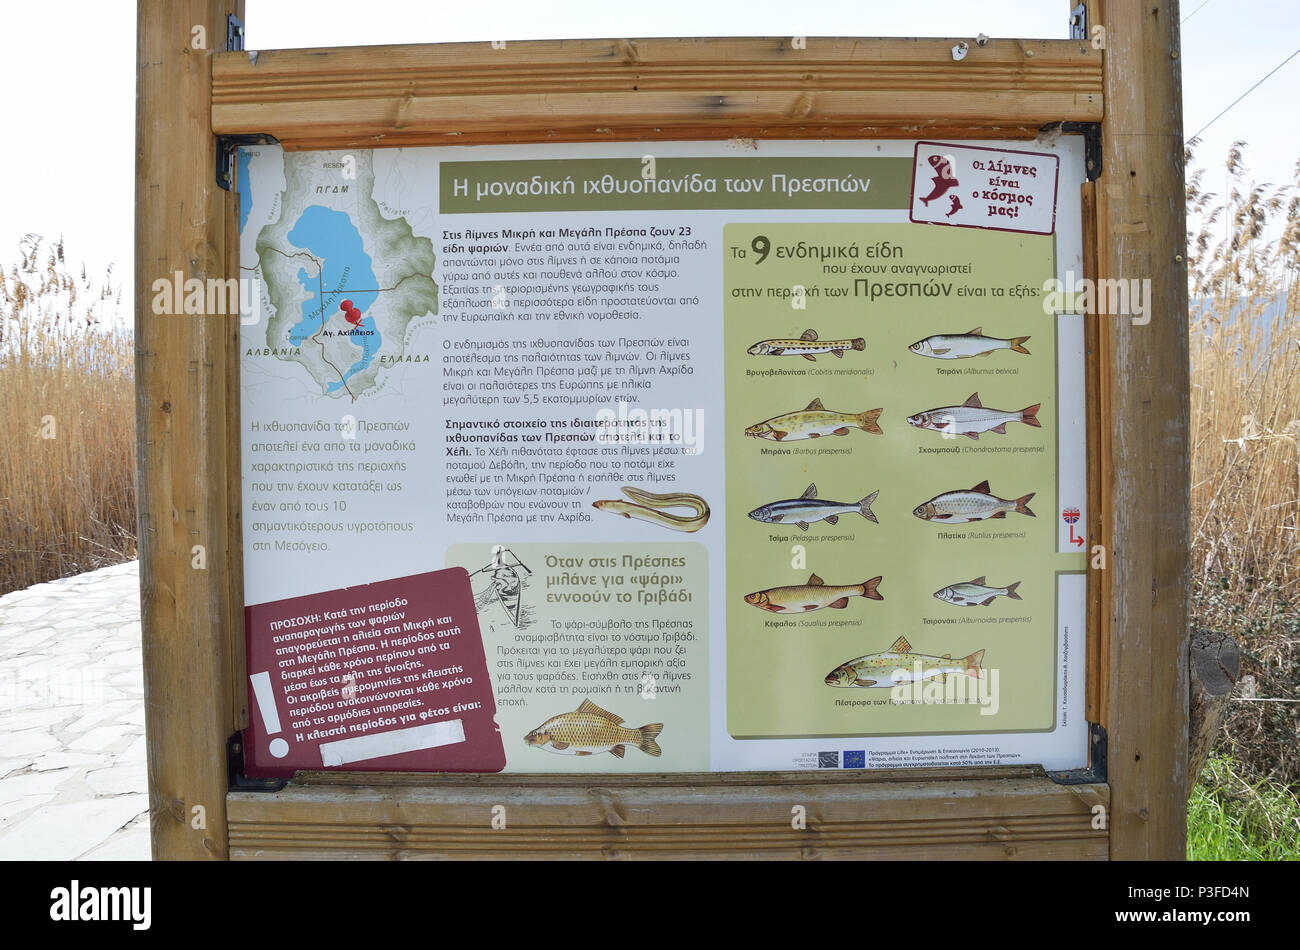 Minore lago Prespa , Grecia - MARZO 28, 2016: Informazioni segno con pesci endemiche del lago prespes in greco. Foto Stock